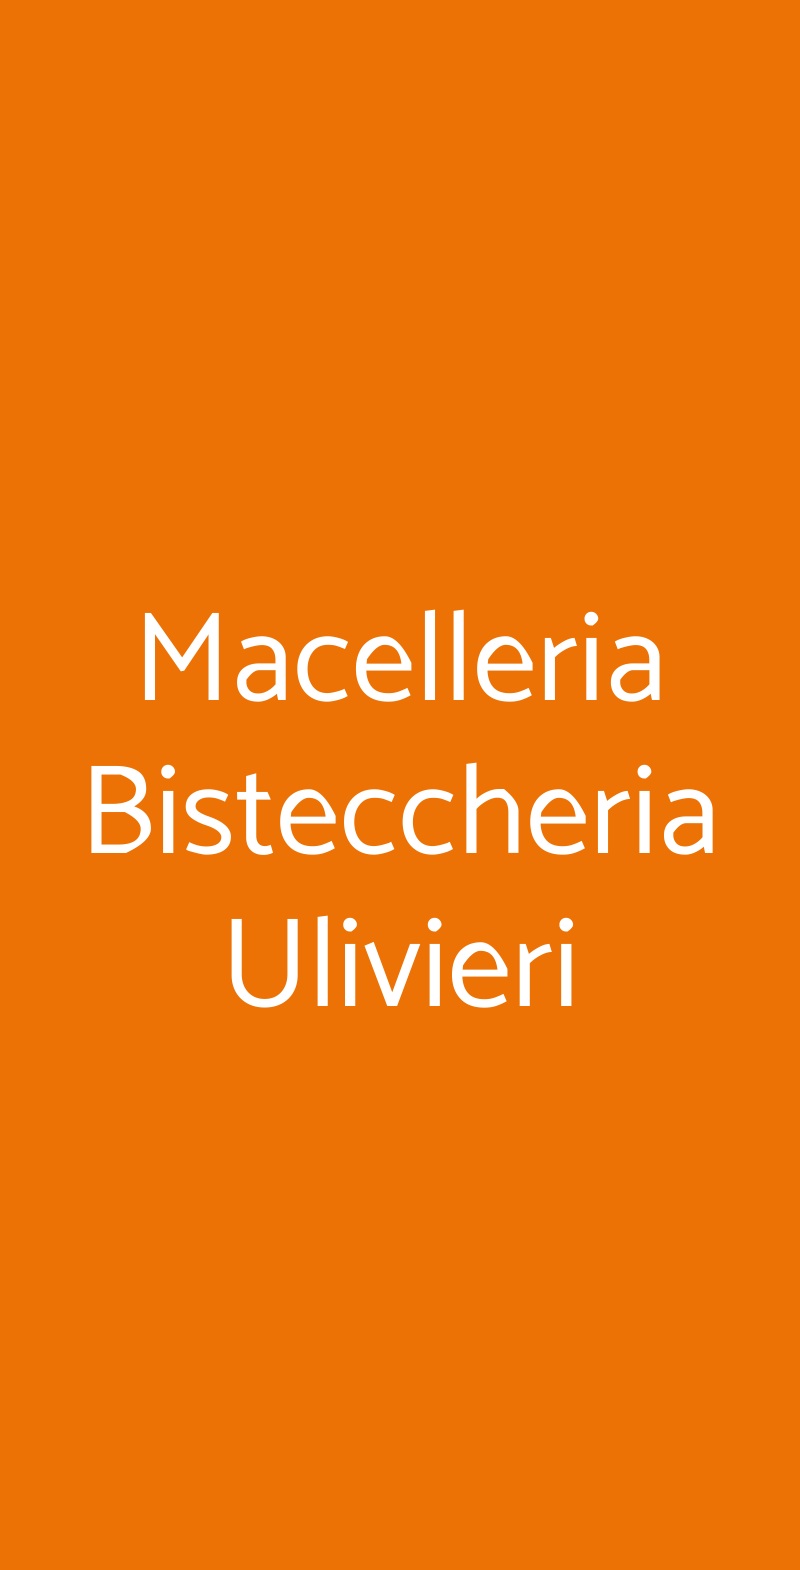 Macelleria Bisteccheria Ulivieri Roma menù 1 pagina